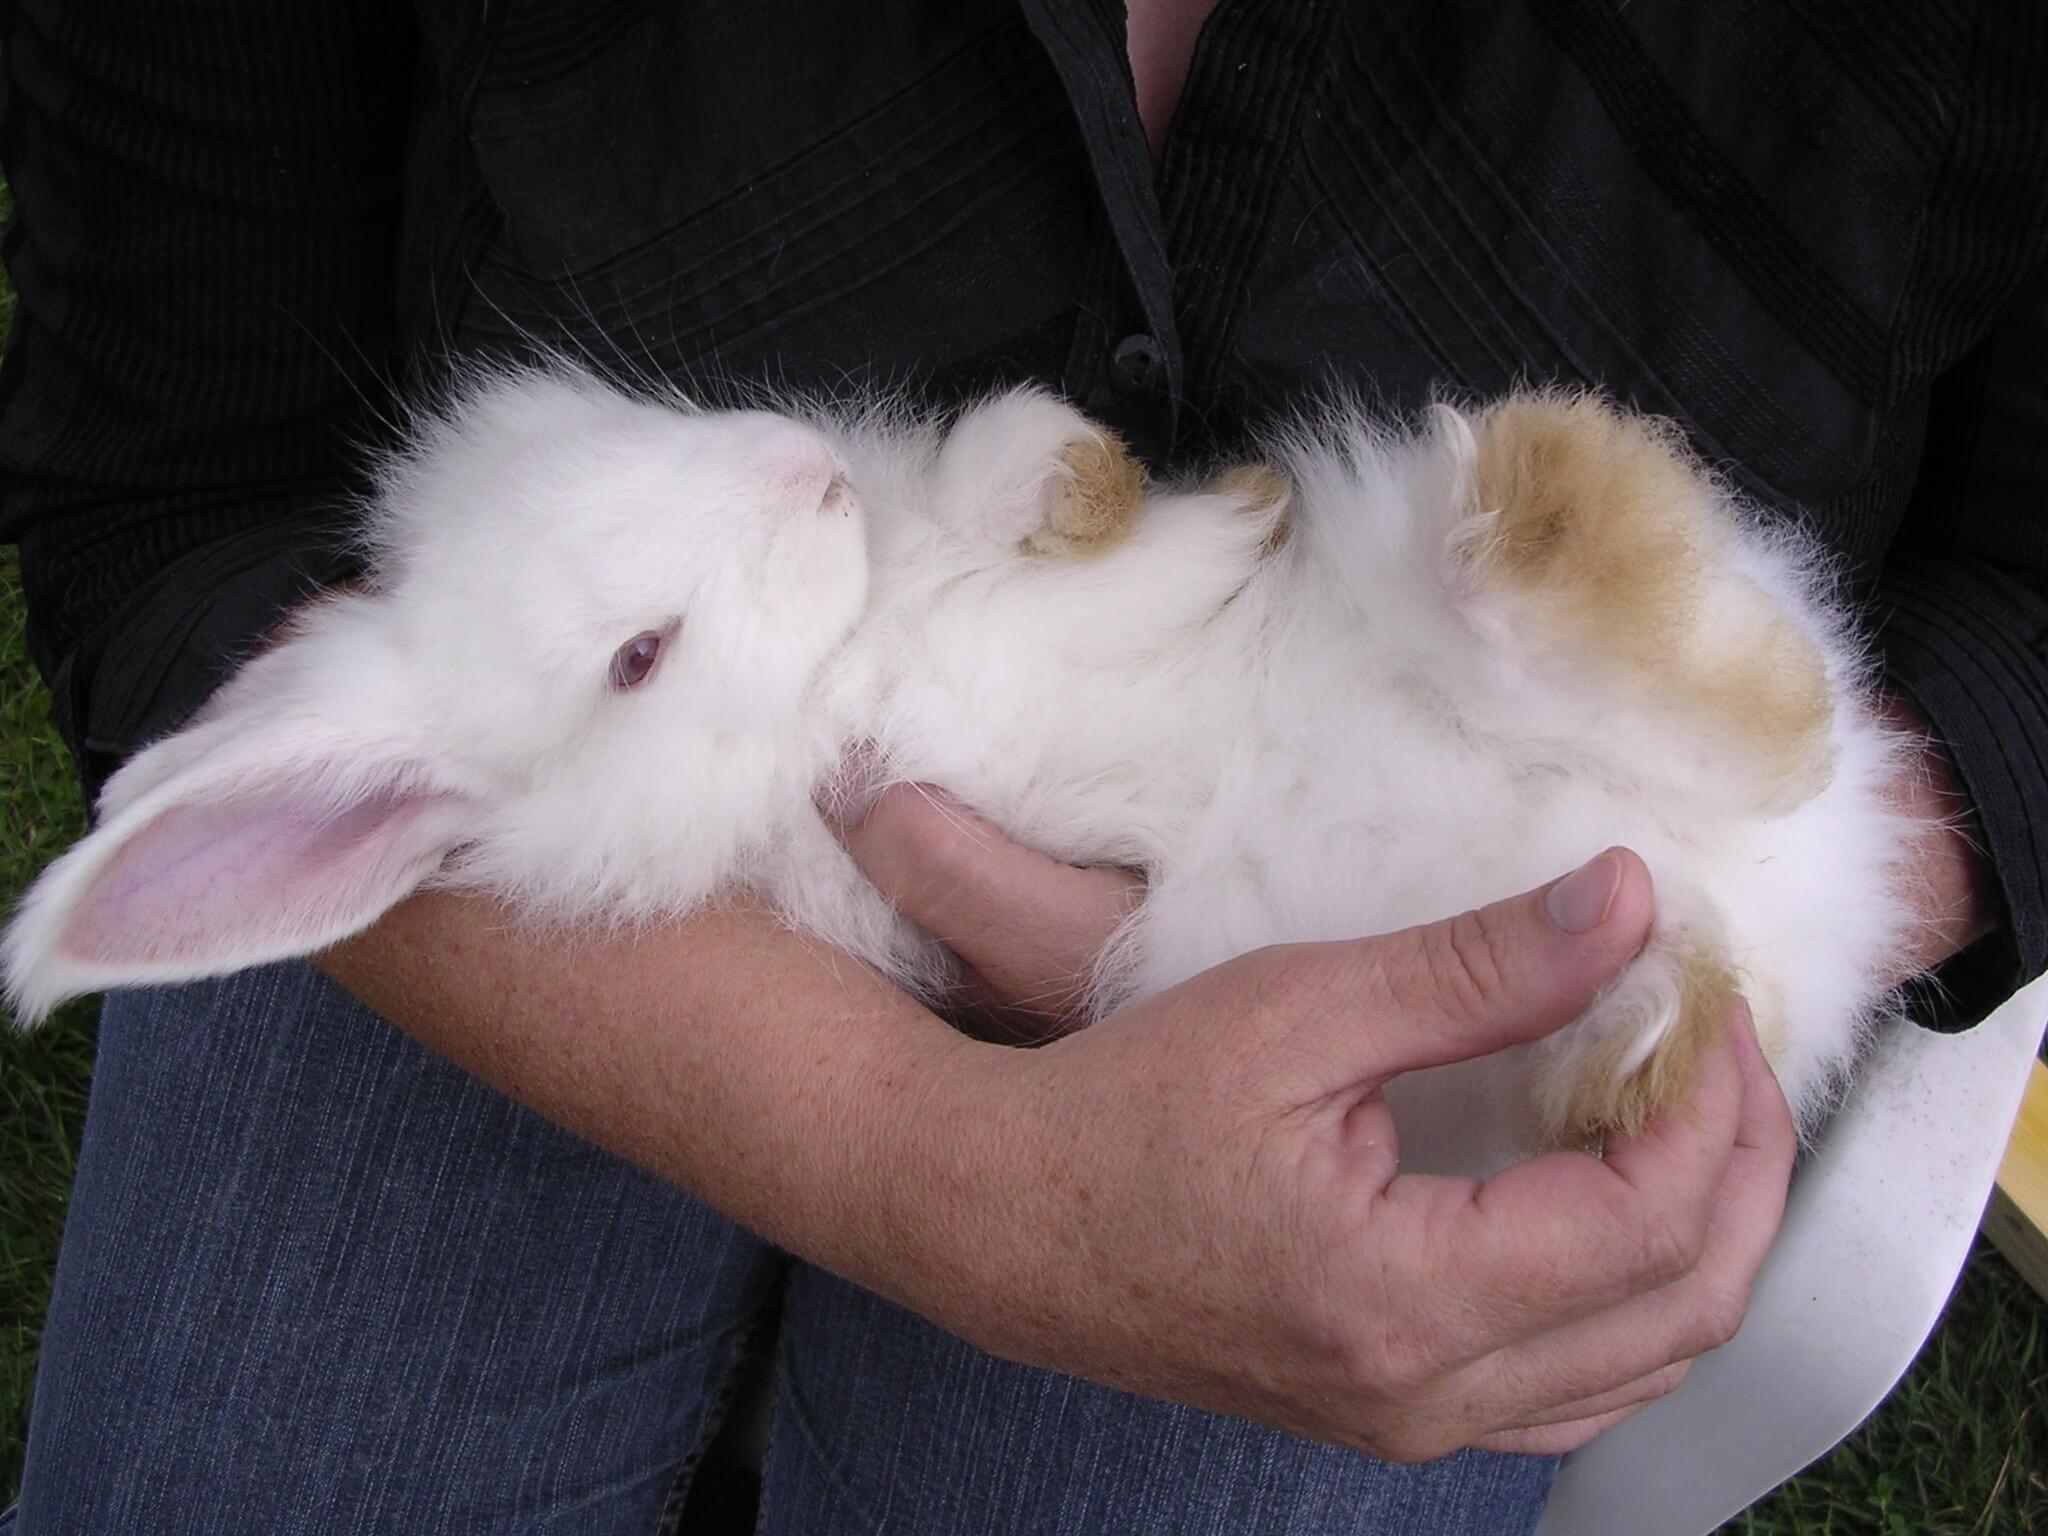 Bonne nouvelle pour les lapins : Citadium arrête l’angora